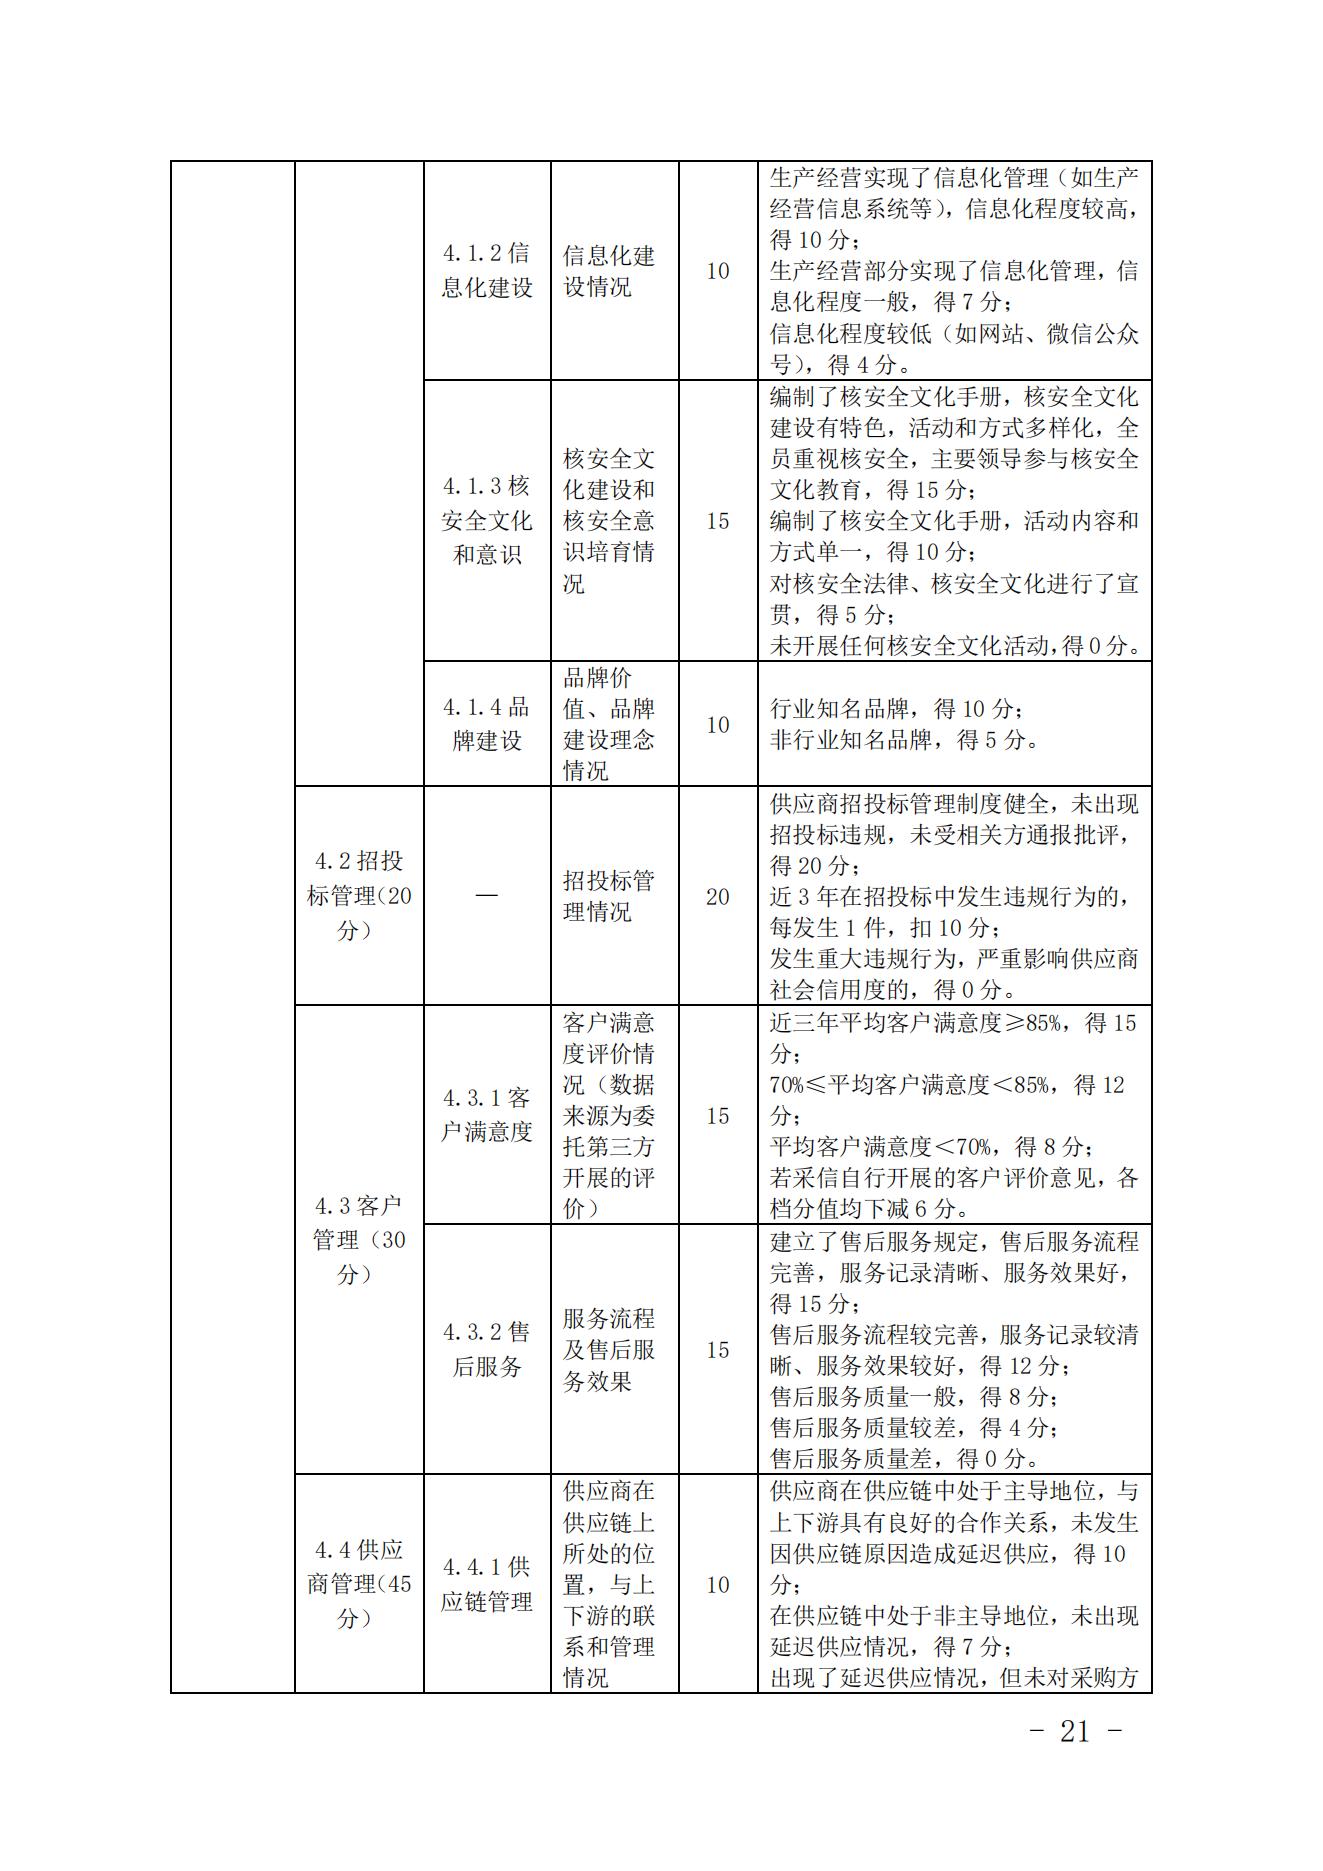 关于印发《中国核能行业协会核能行业供应商信用评价管理办法》《中国核能行业协会核能行业供应商信用评价规范》的通知_20.jpg